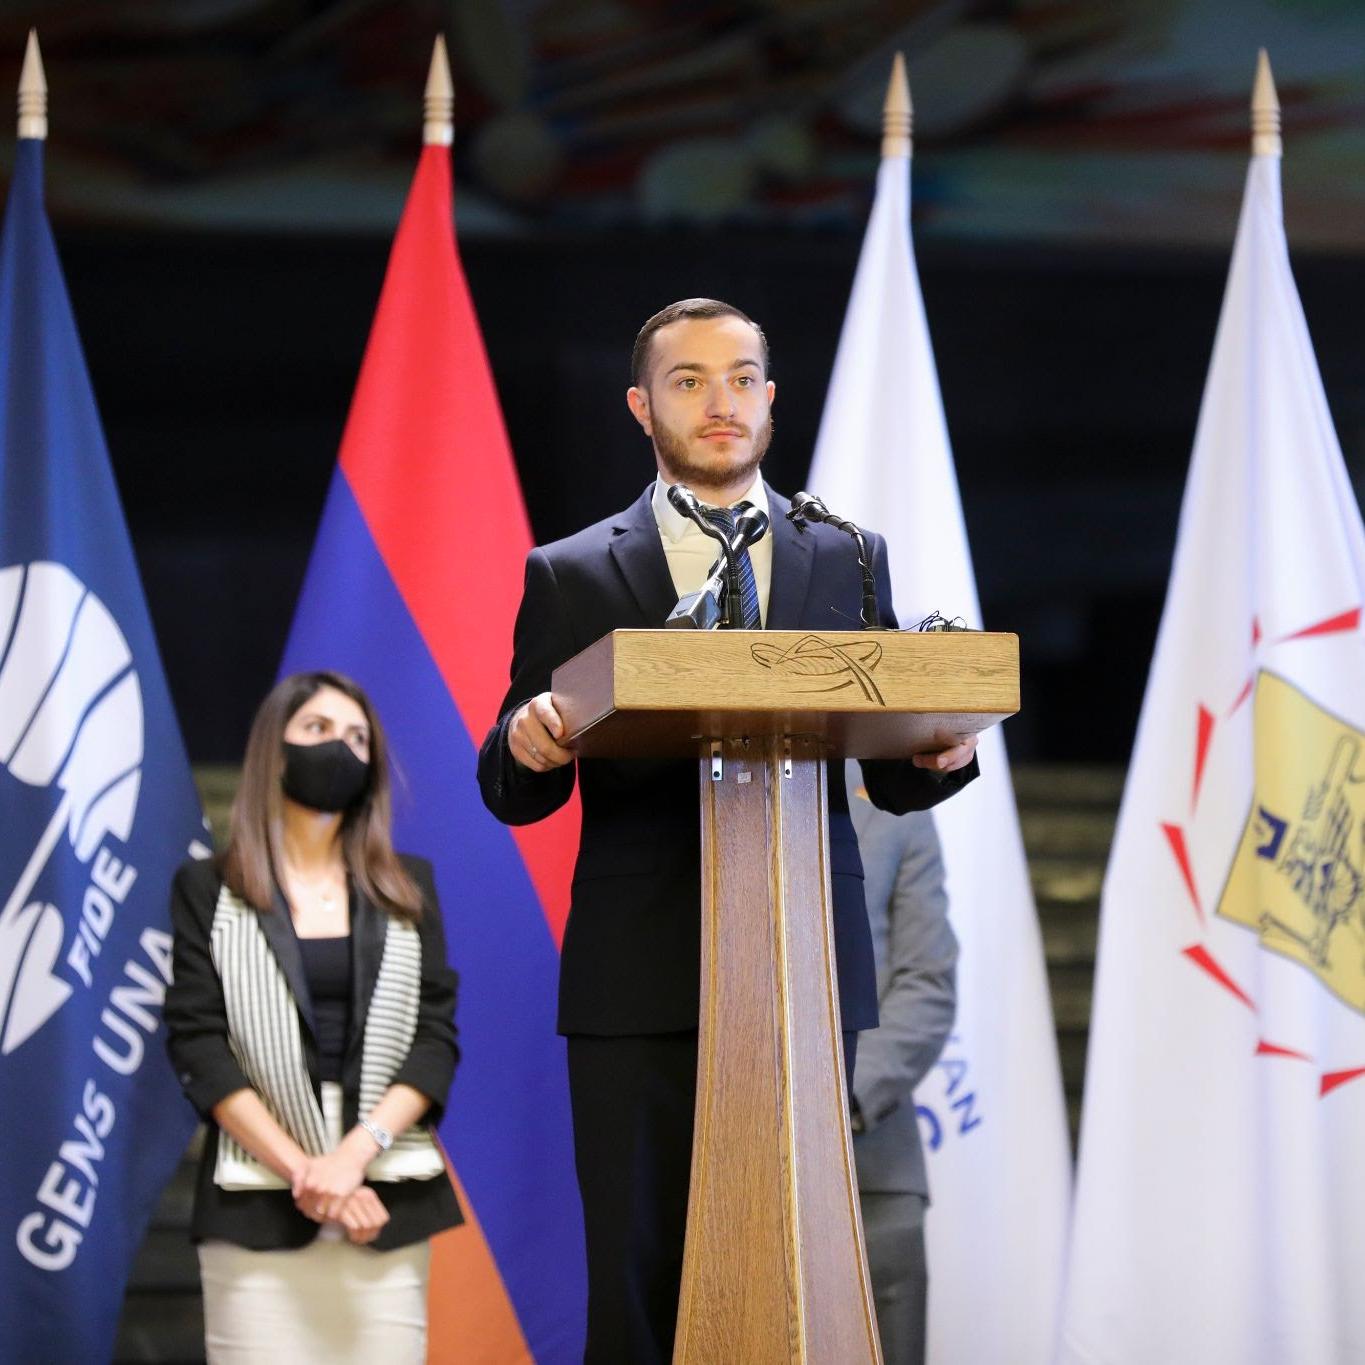 Երևանի շախմատի ֆեդերացիայի նախագահի ելույթը Yerevan Open մրցաշարի ժամանակ